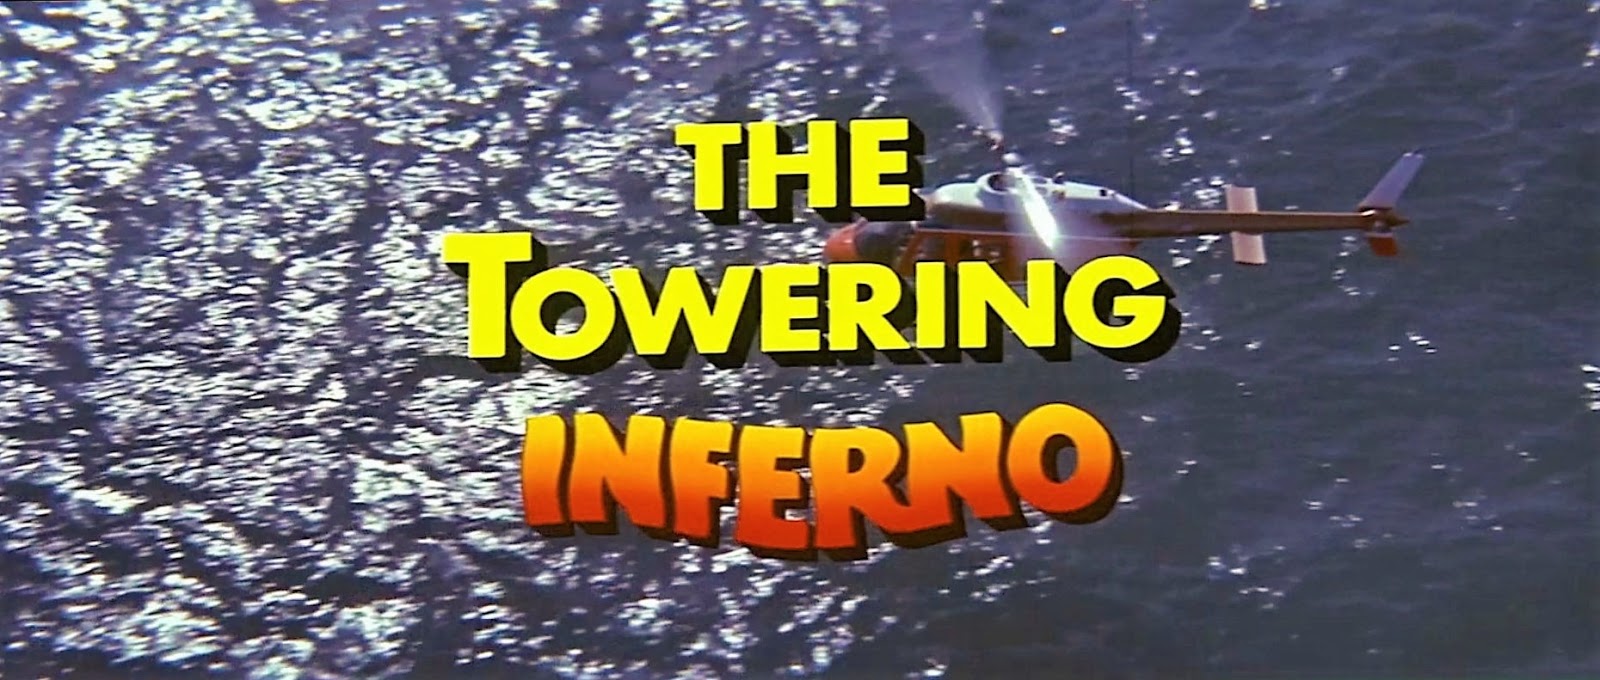 towering-inferno-irwin-allen-1974.JPG